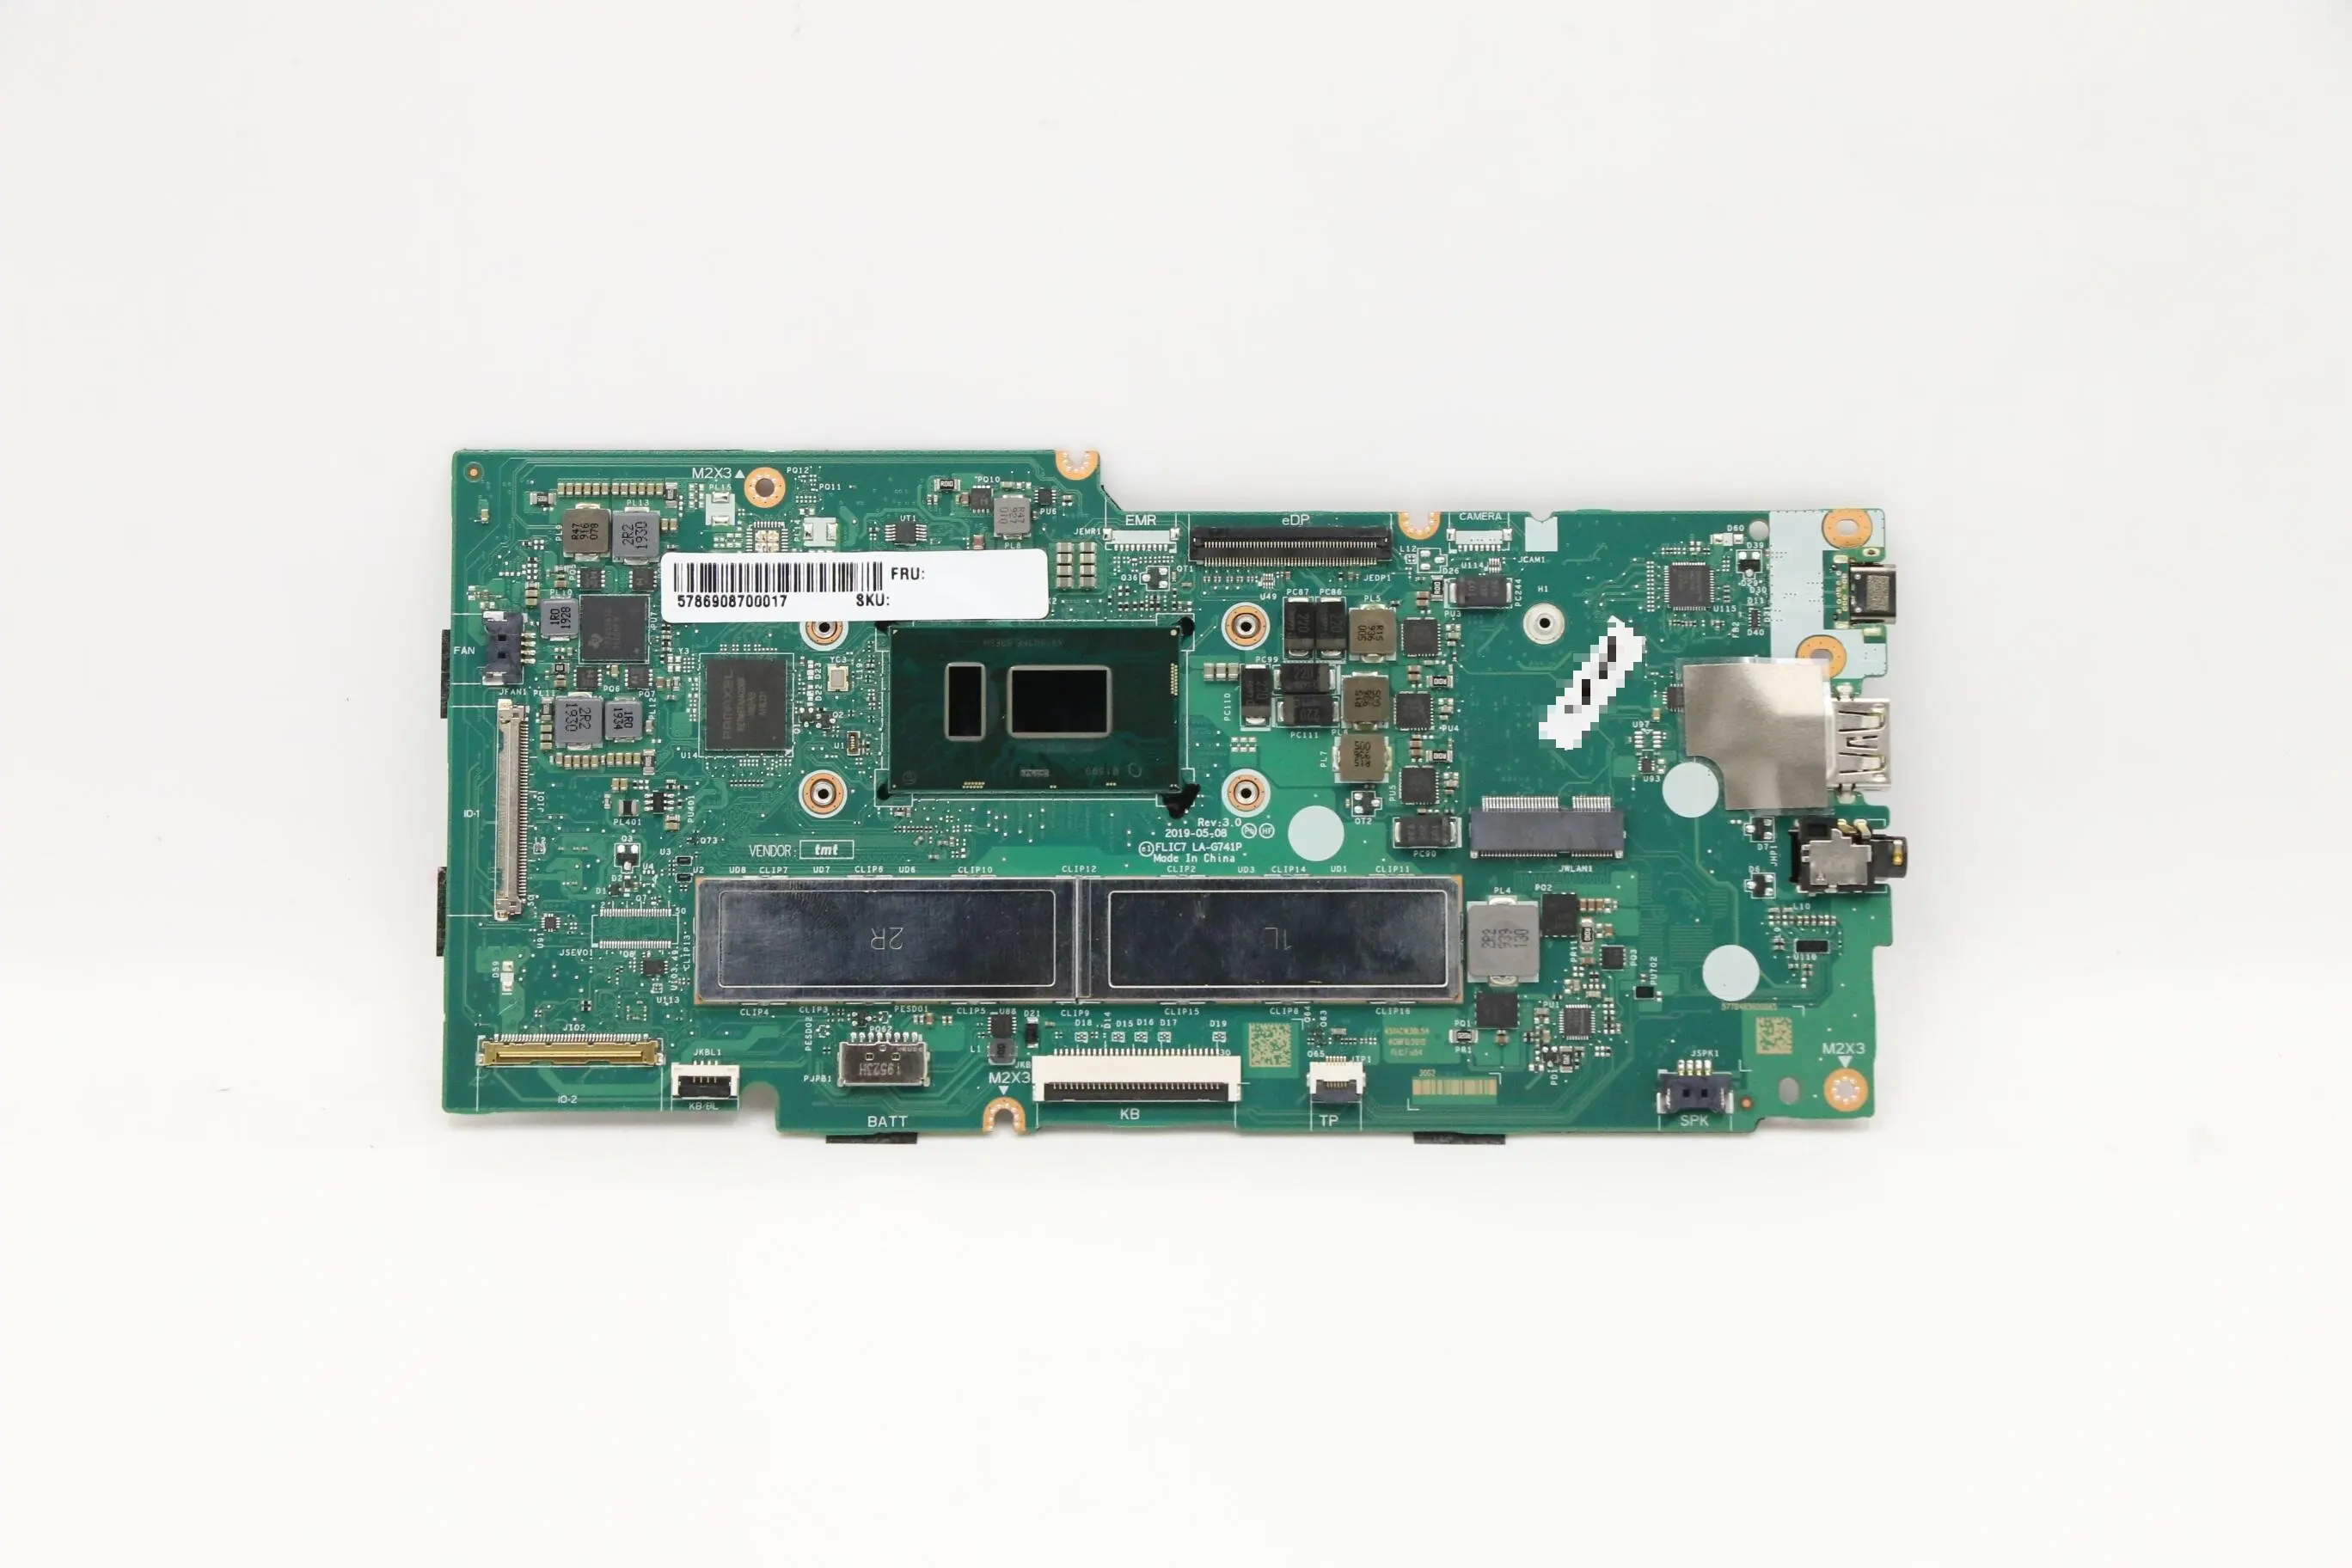 SN LA-G741P FRU PN 5B20S72408 процессор intelPentium4417U Модель совместимой замены материнской платы ноутбука Chromebook C340-15